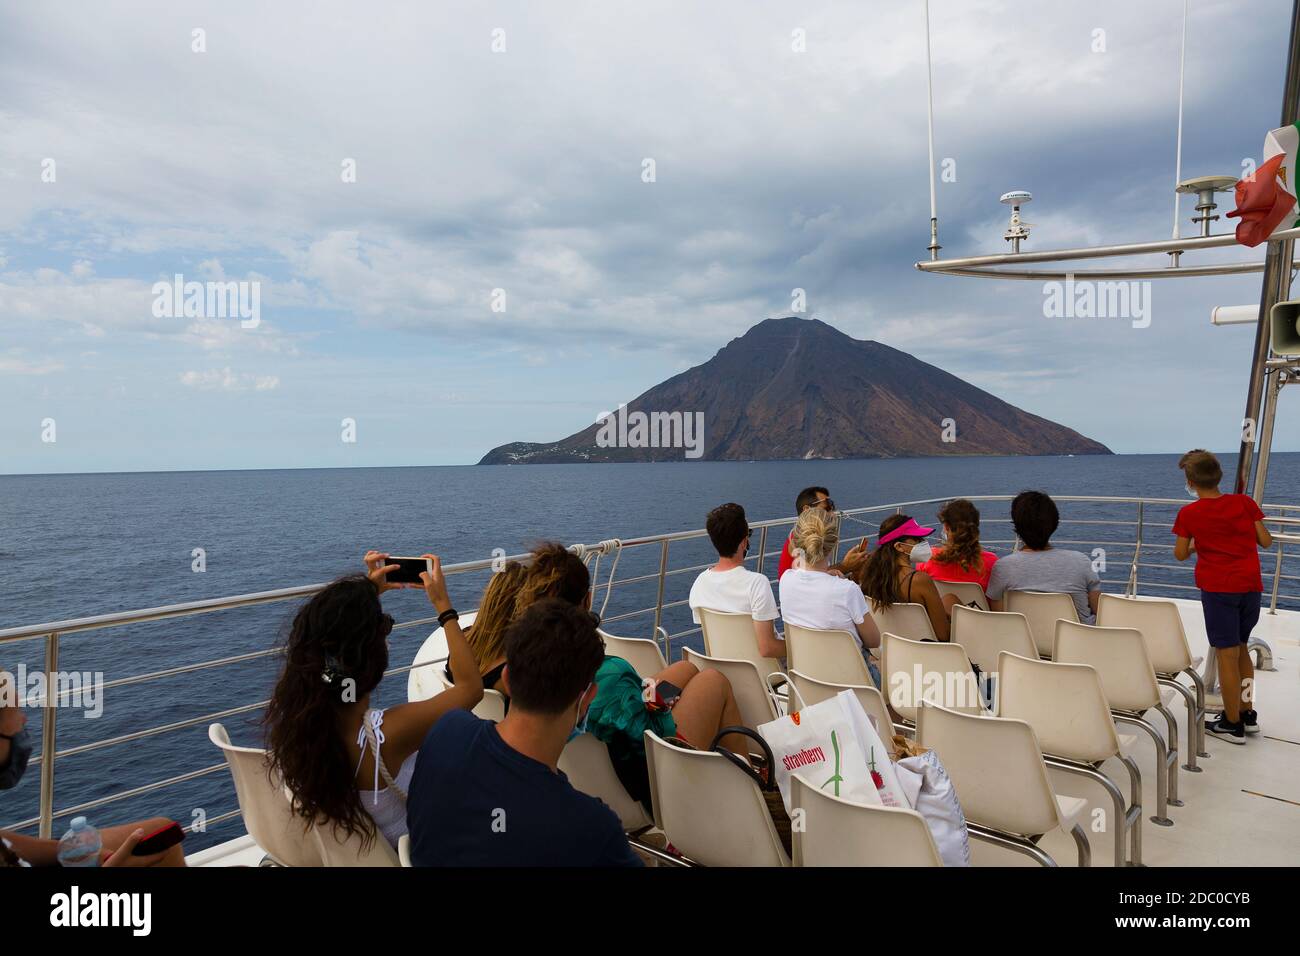 Sicilia, Italia. I turisti sul ponte di una barca turistica osservano e scattano le foto di un pennacchio di fumo che sorge dal vulcano attivo di Stromboli. Foto Stock